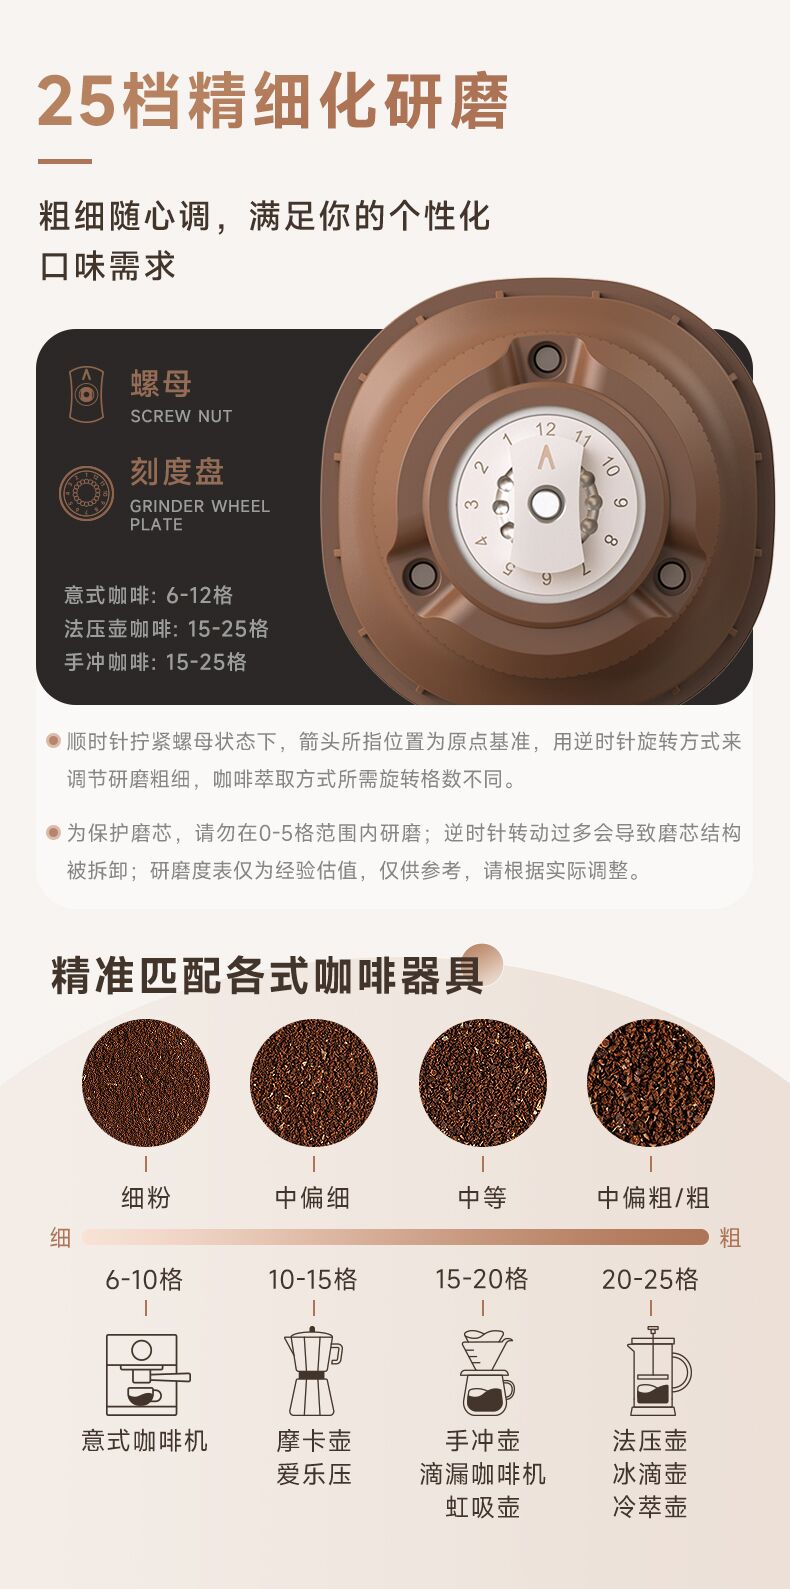 铠食便携式电动磨豆机小型家用研磨手冲意式咖啡豆五谷全自动磨豆